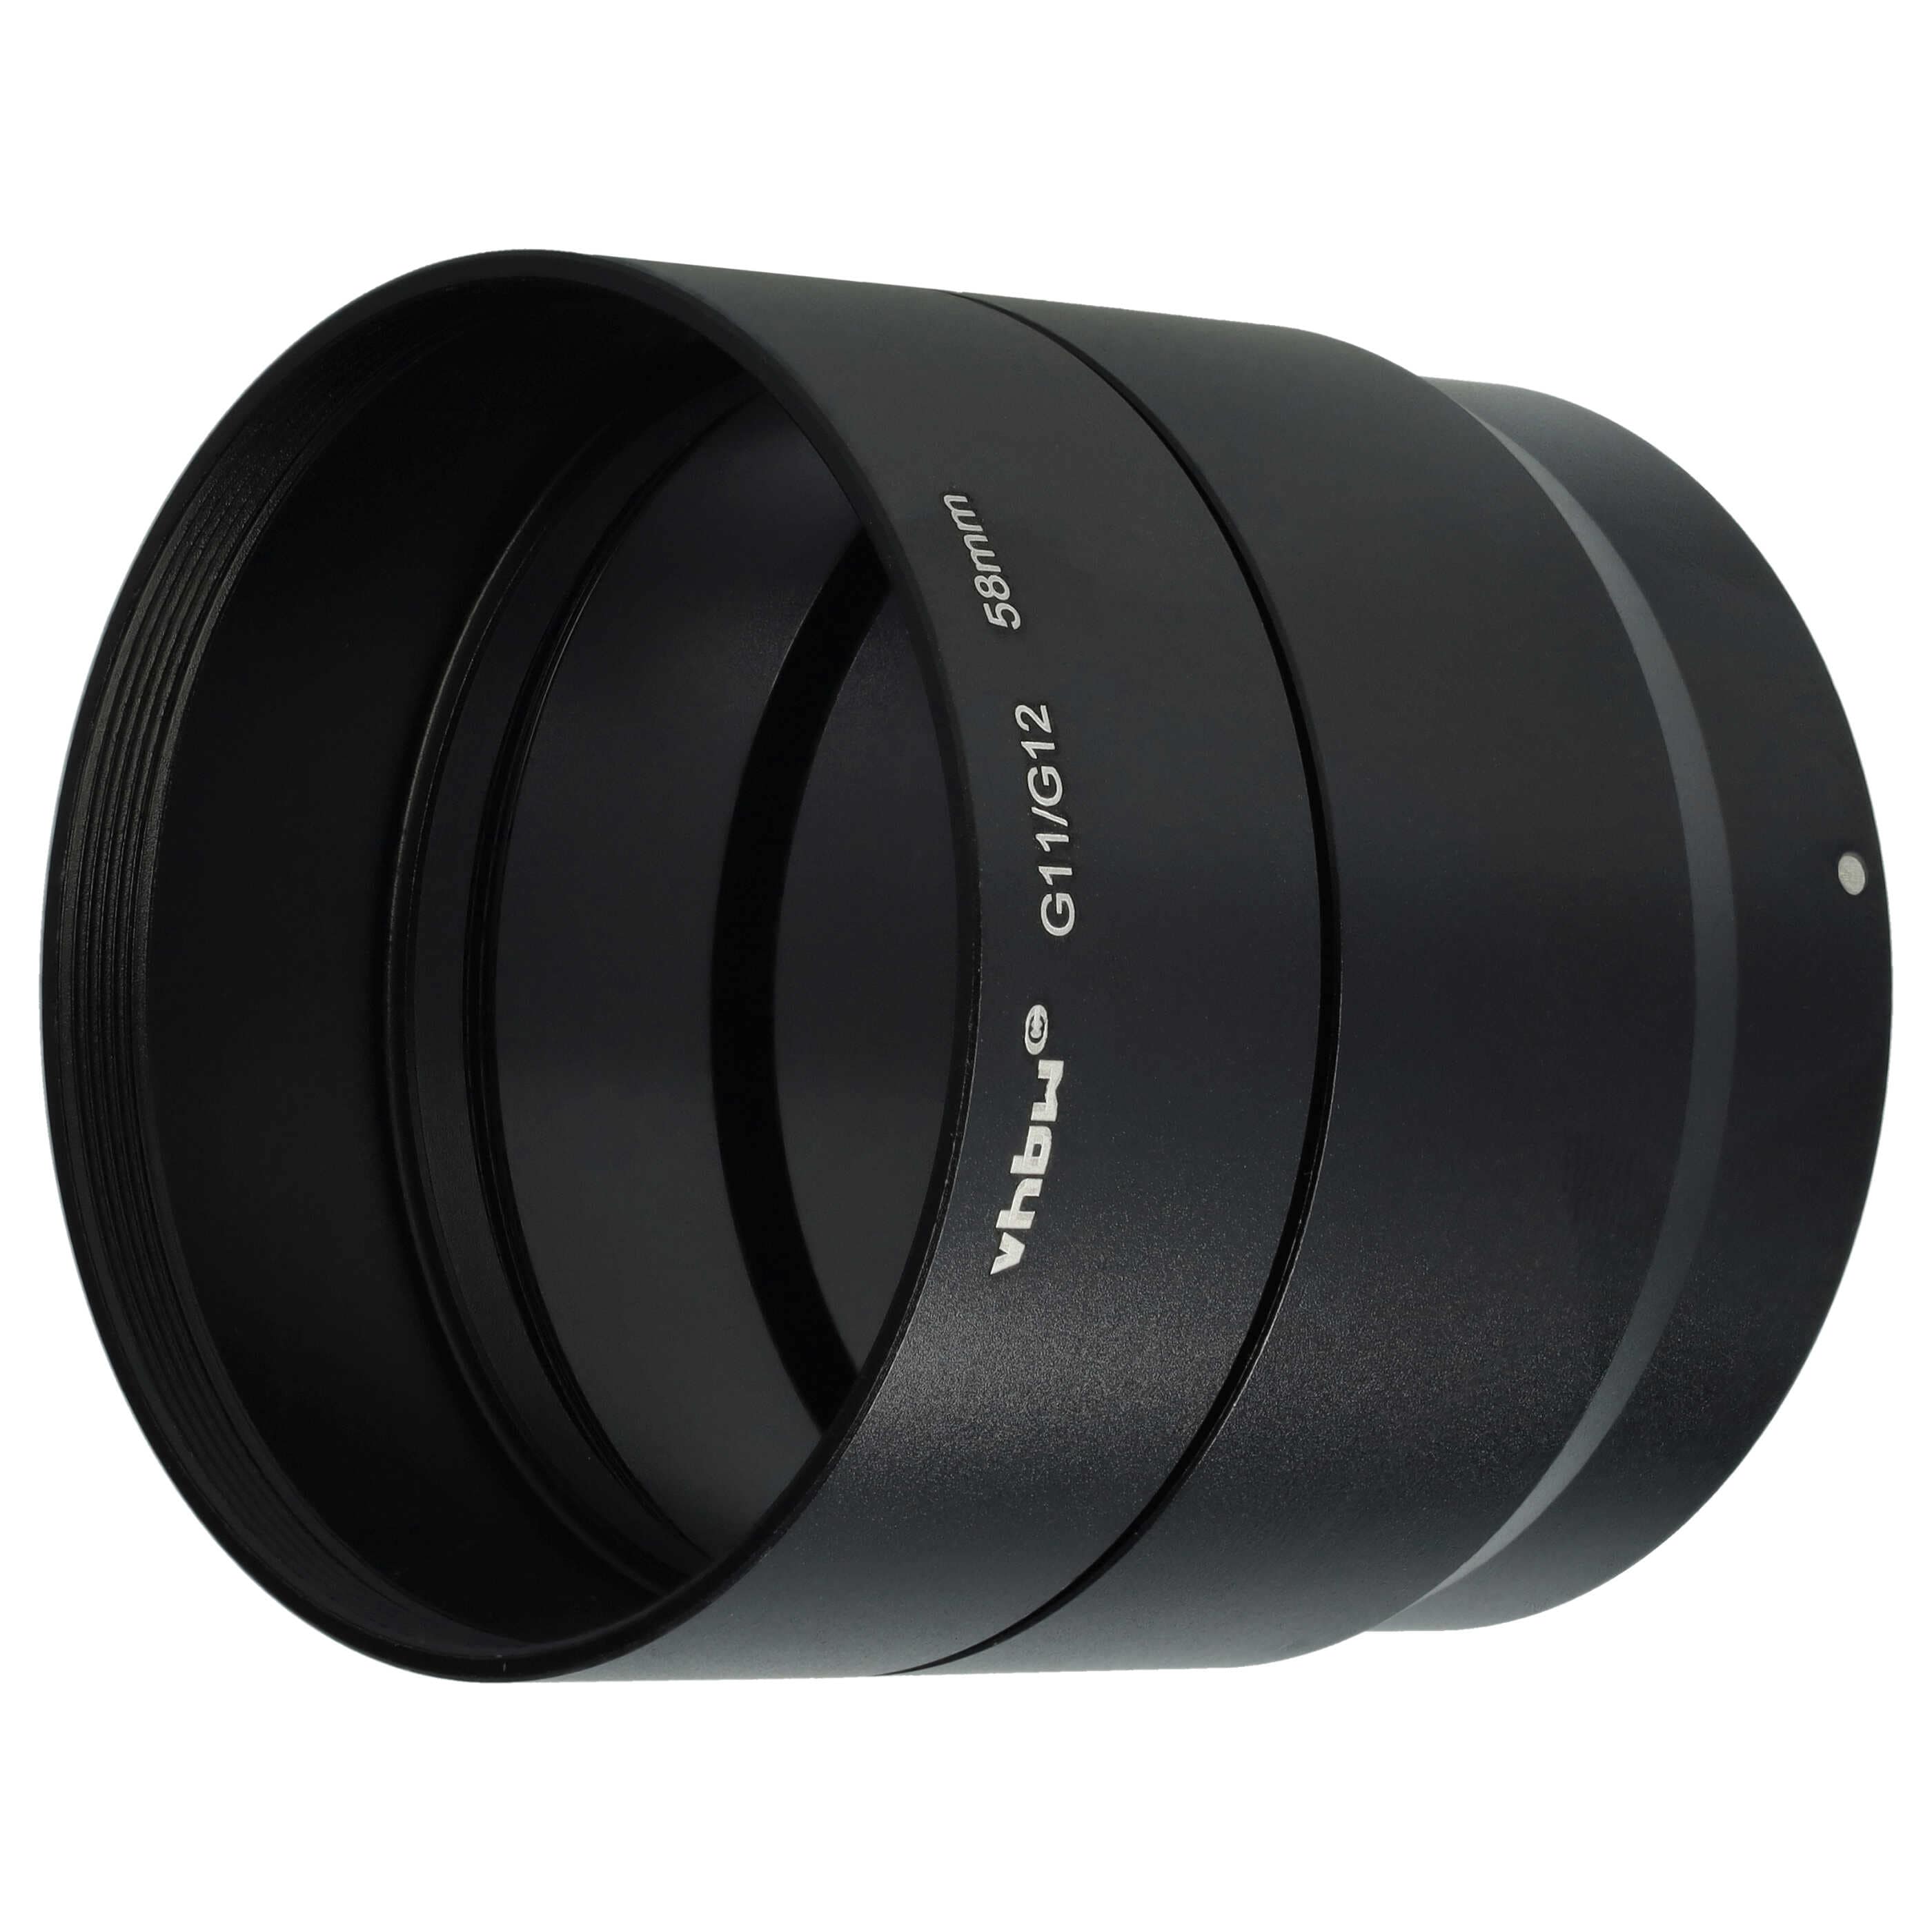 Redukcja filtrowa 58 mm w formie tulei do obiektywu aparatu Canon PowerShot G10, G11, G12 